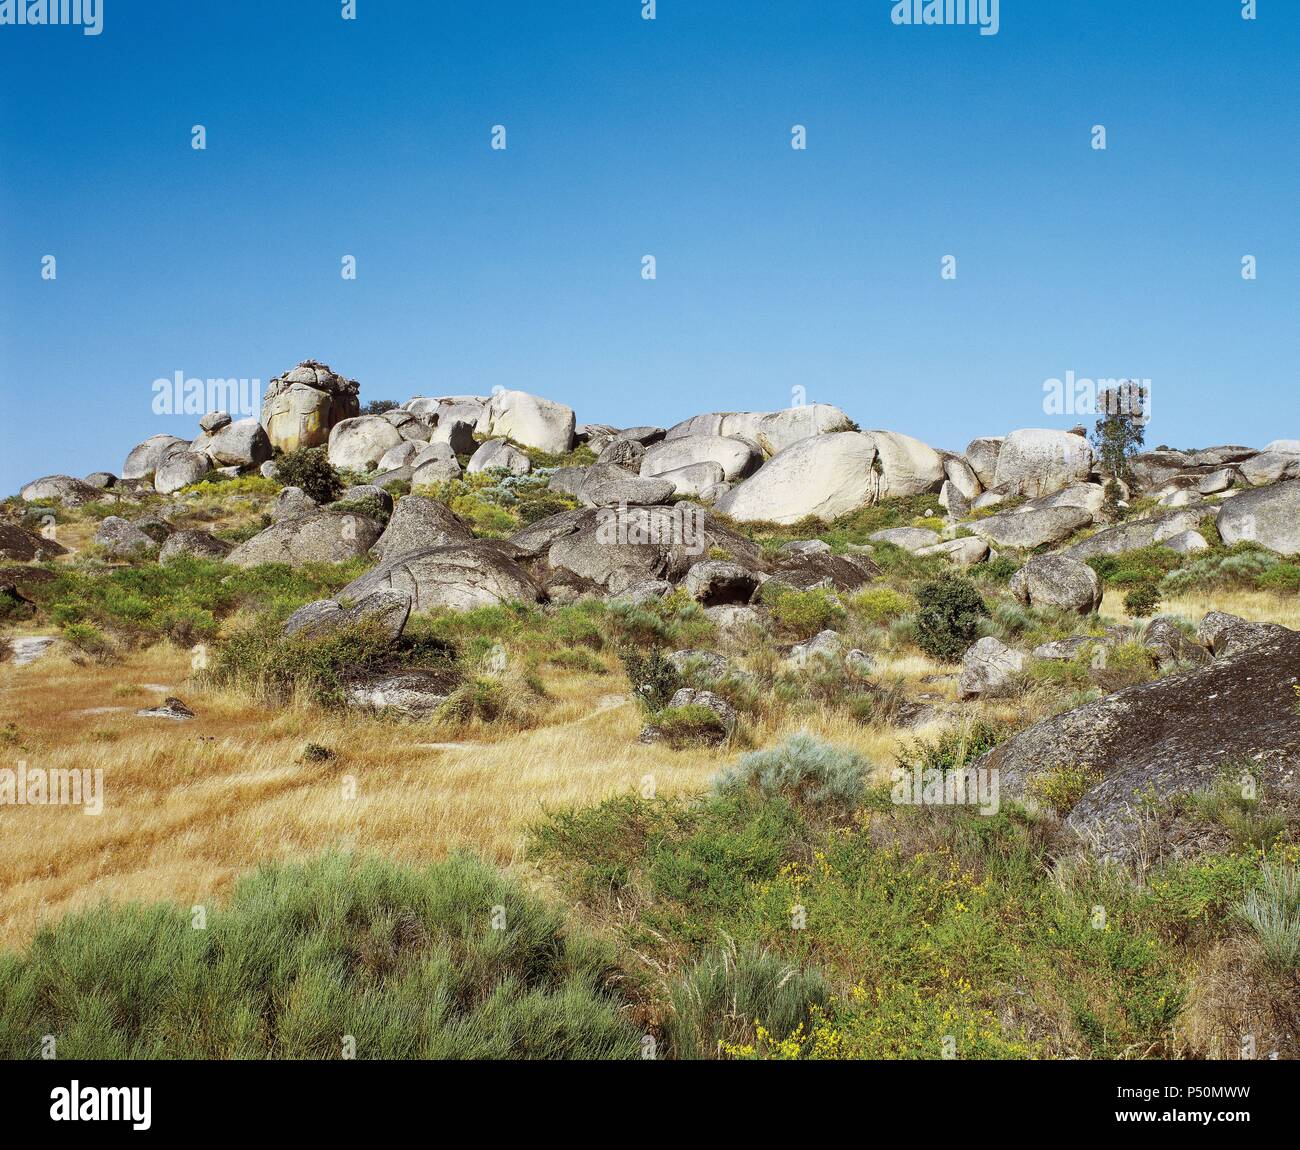 España. Extremadura. Los Barruecos. Monumento Natural. El paisaje está dominado por grandes rocas de granito, moldeado por los agentes erosivos. Foto de stock